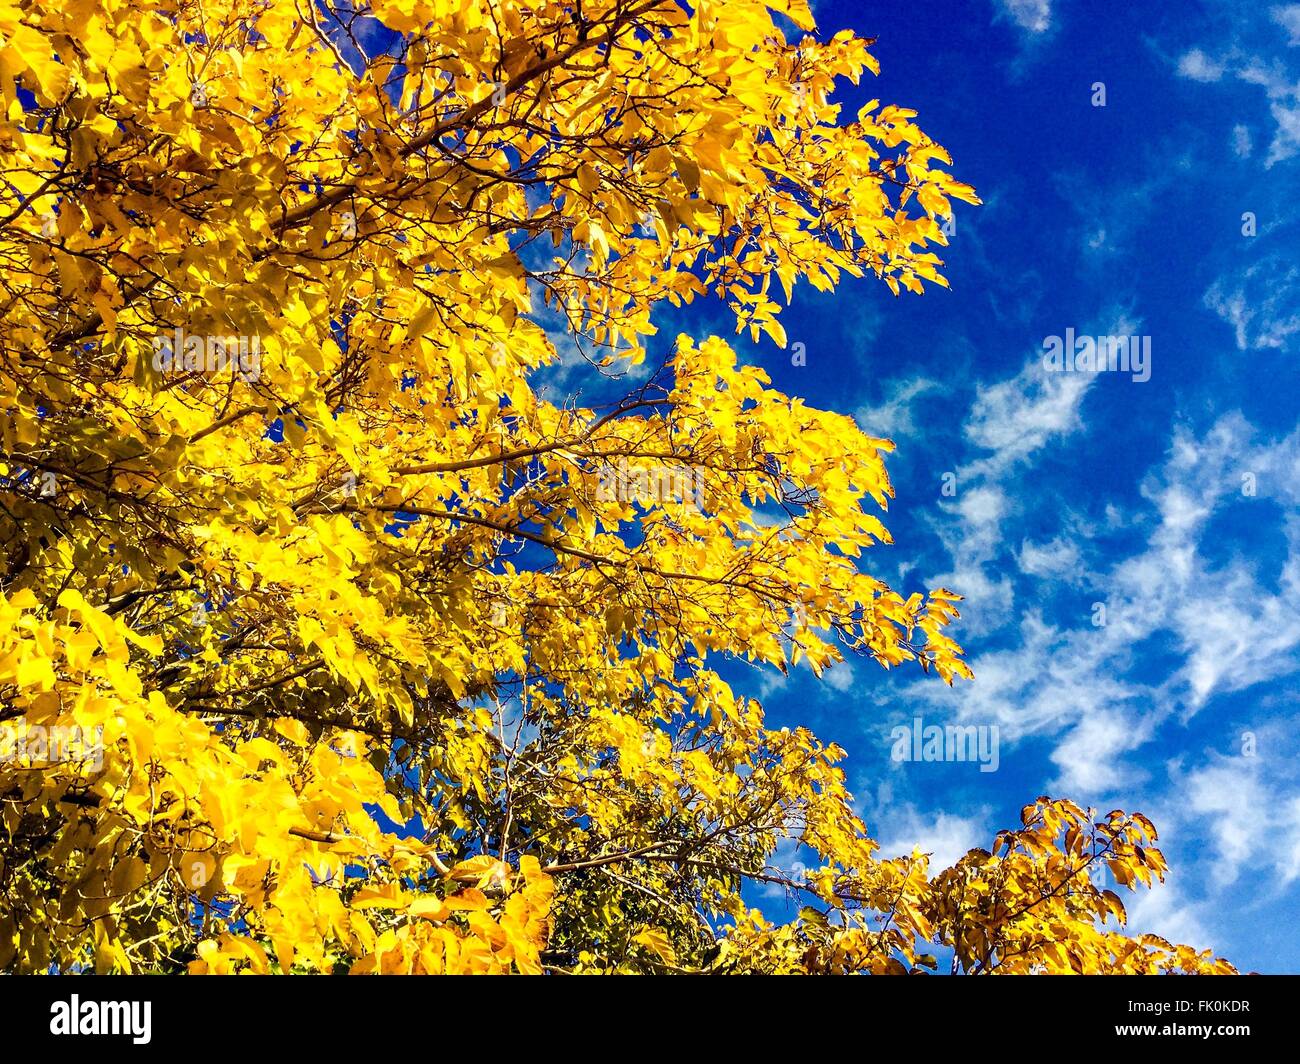 Goldgelbe Blätter im Herbst gegen einen hellen blauen Himmel. Stockfoto